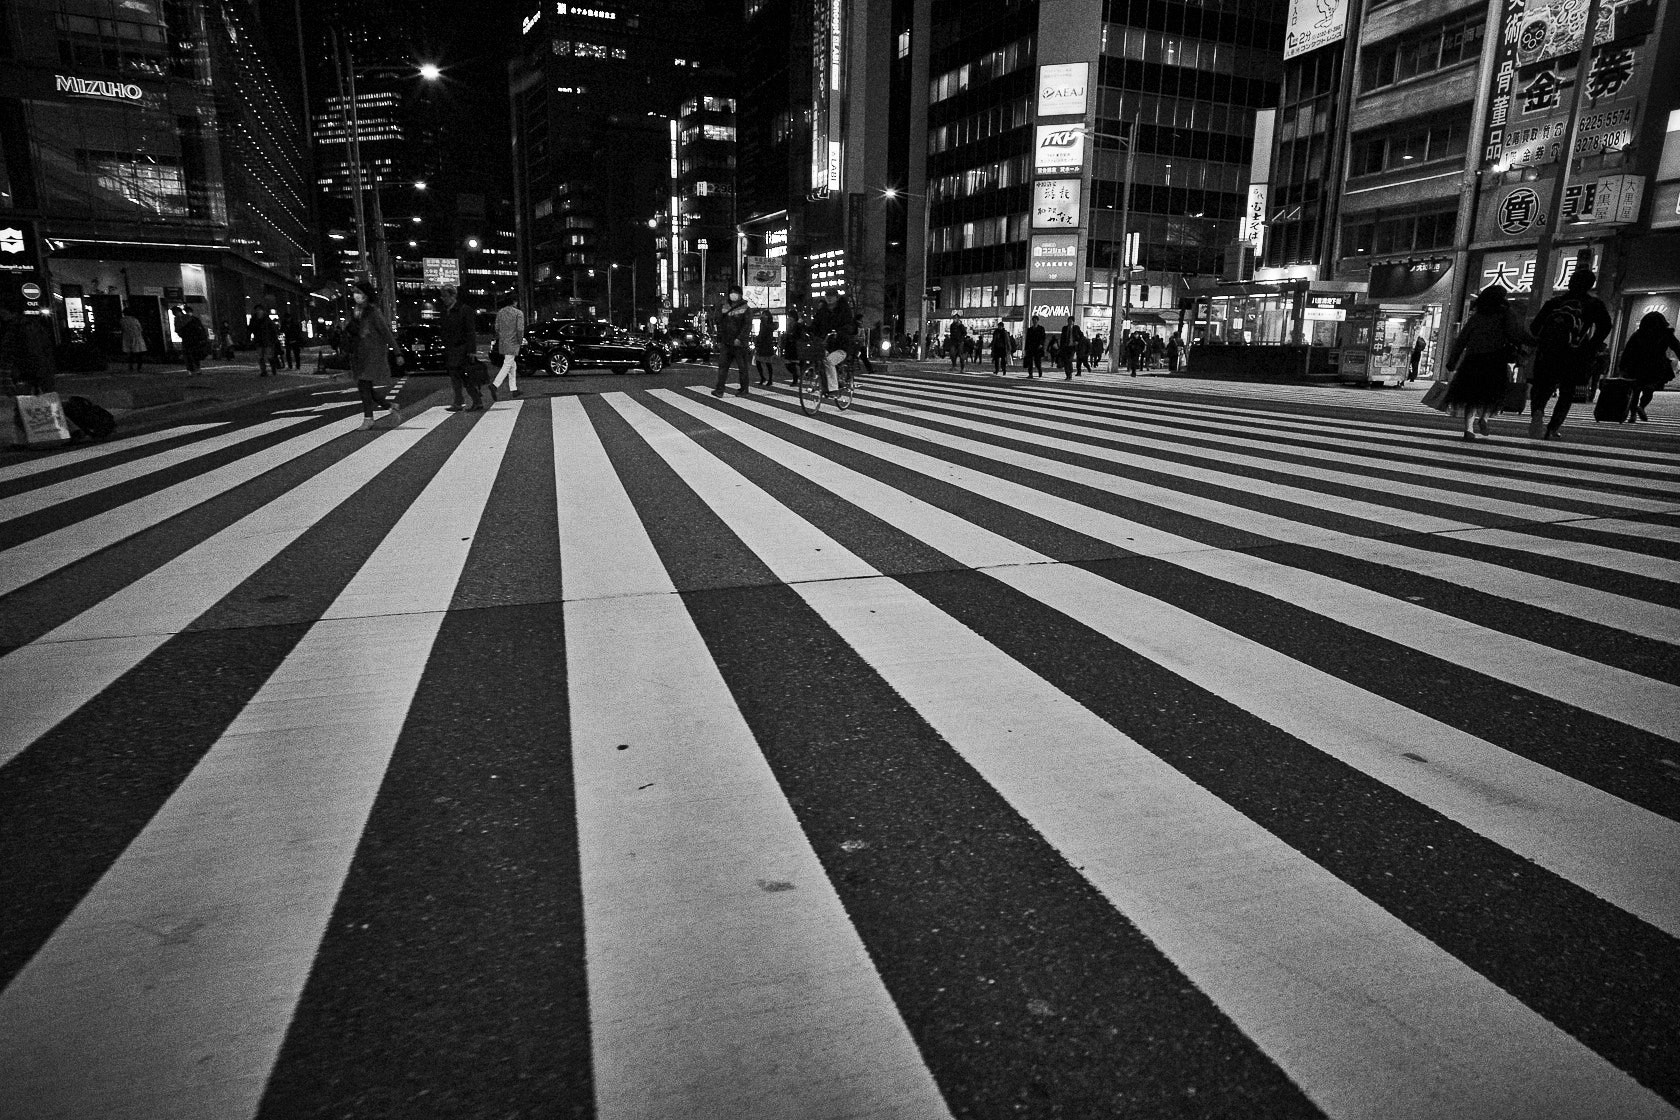 Voigtländer Color-Skopar 21mm f/4.0 P sample photo. Crosswalk tokyo station photography